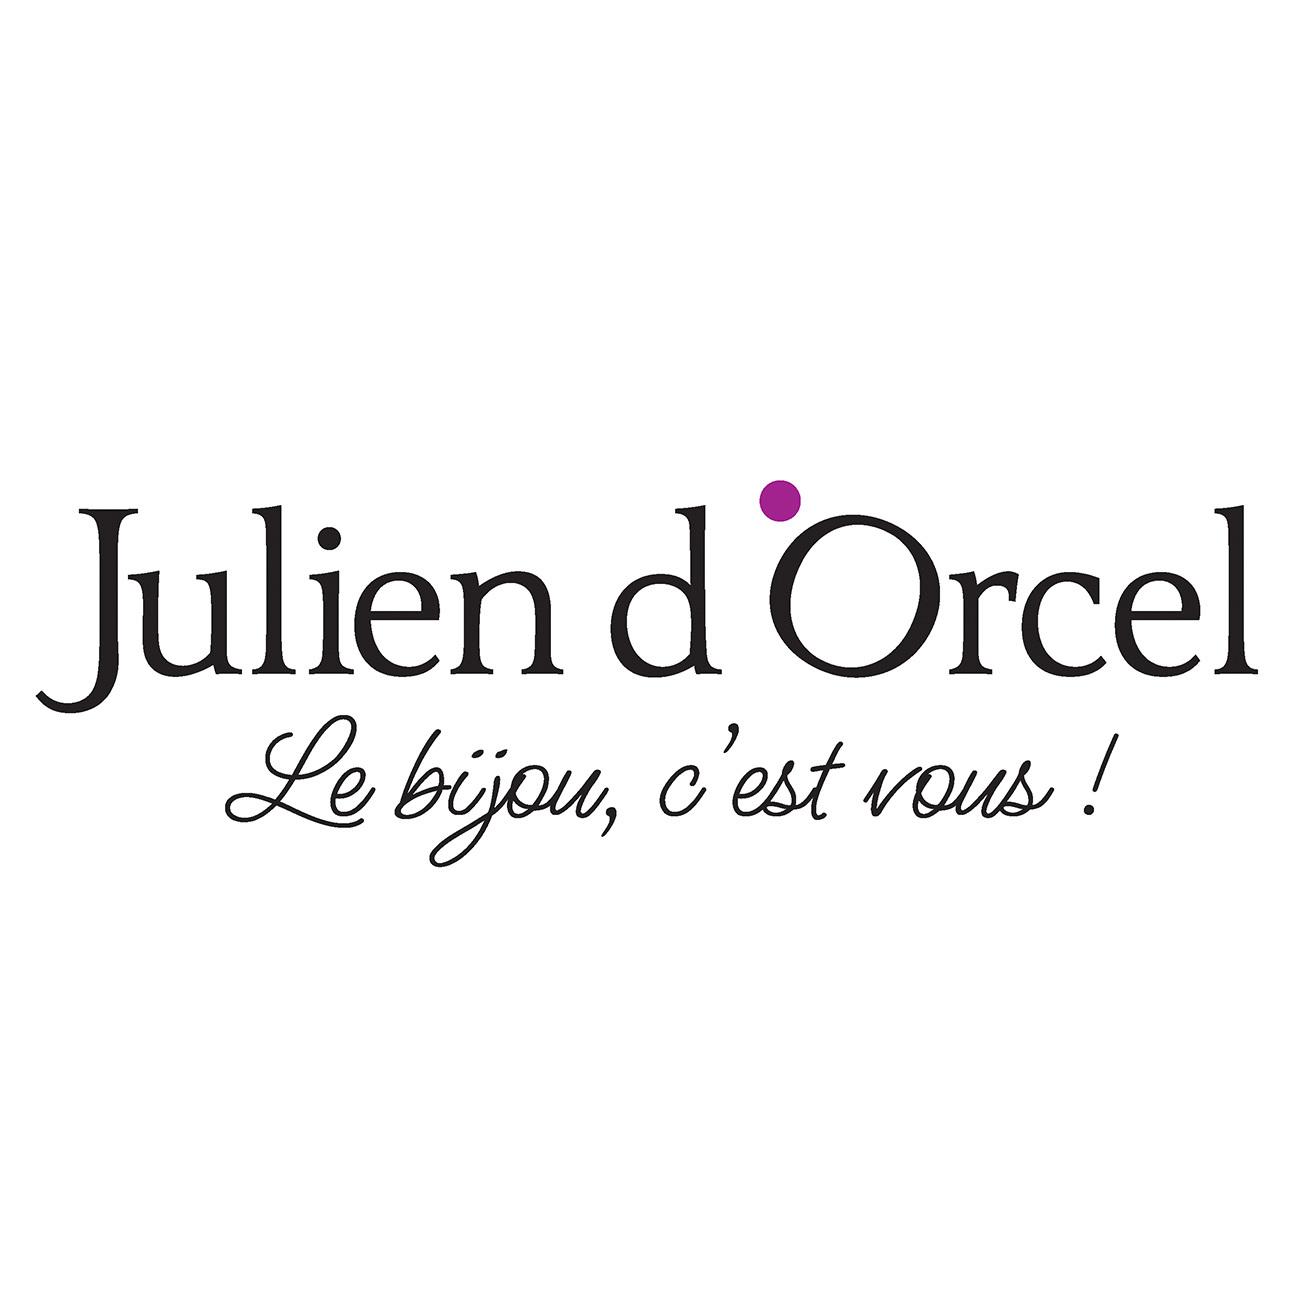 Julien D'orcel Dax